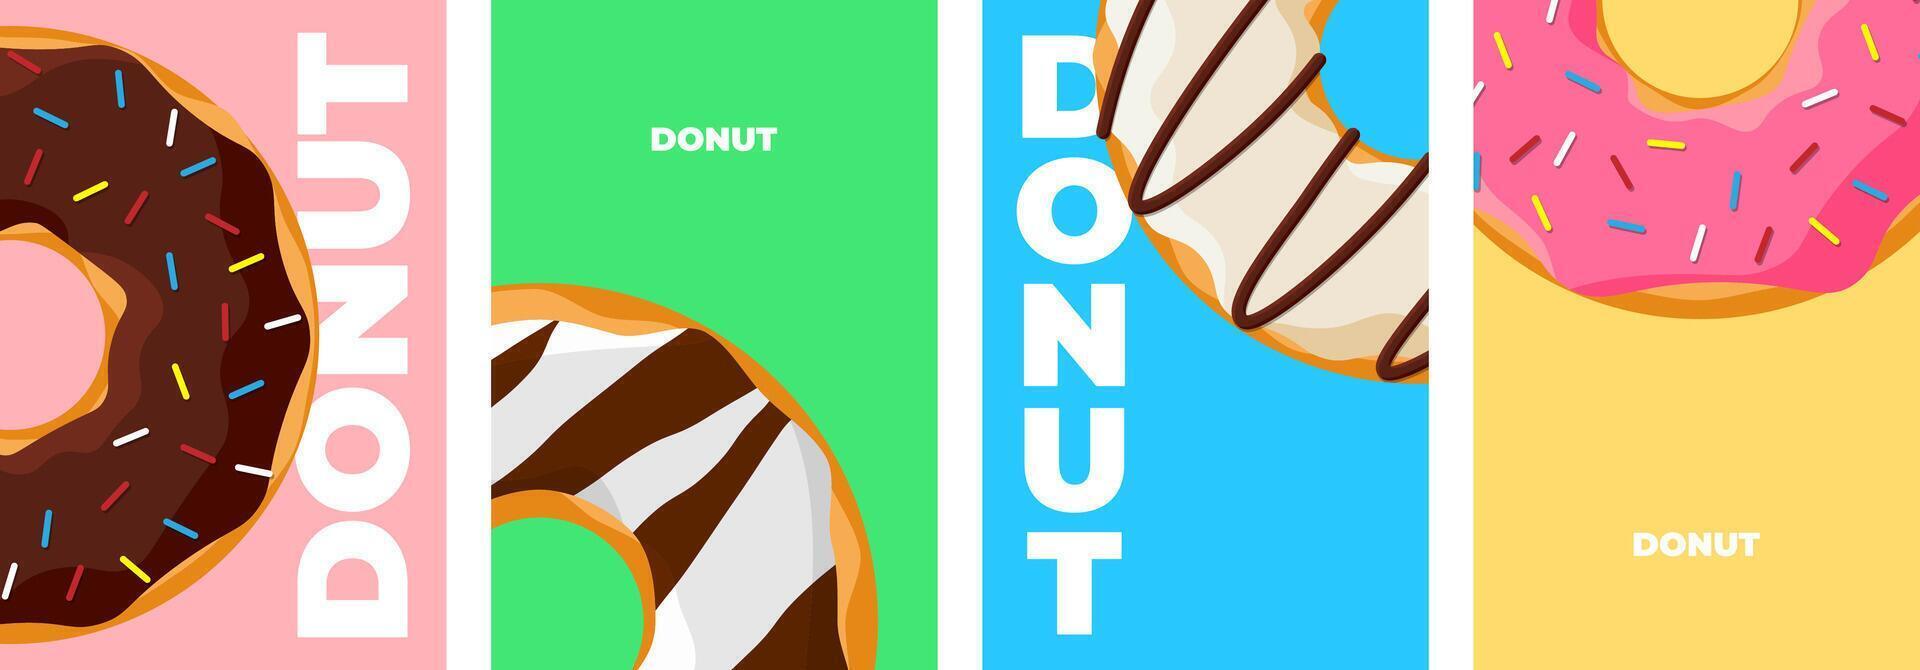 kleurrijk smakelijk donut poster ontwerp set. geglazuurd donuts banier verzameling voor cafe decoratie of reclame. zoet gebakken ringen Aan gekleurde achtergrond. vector eps tekening illustratie voor bakkerij